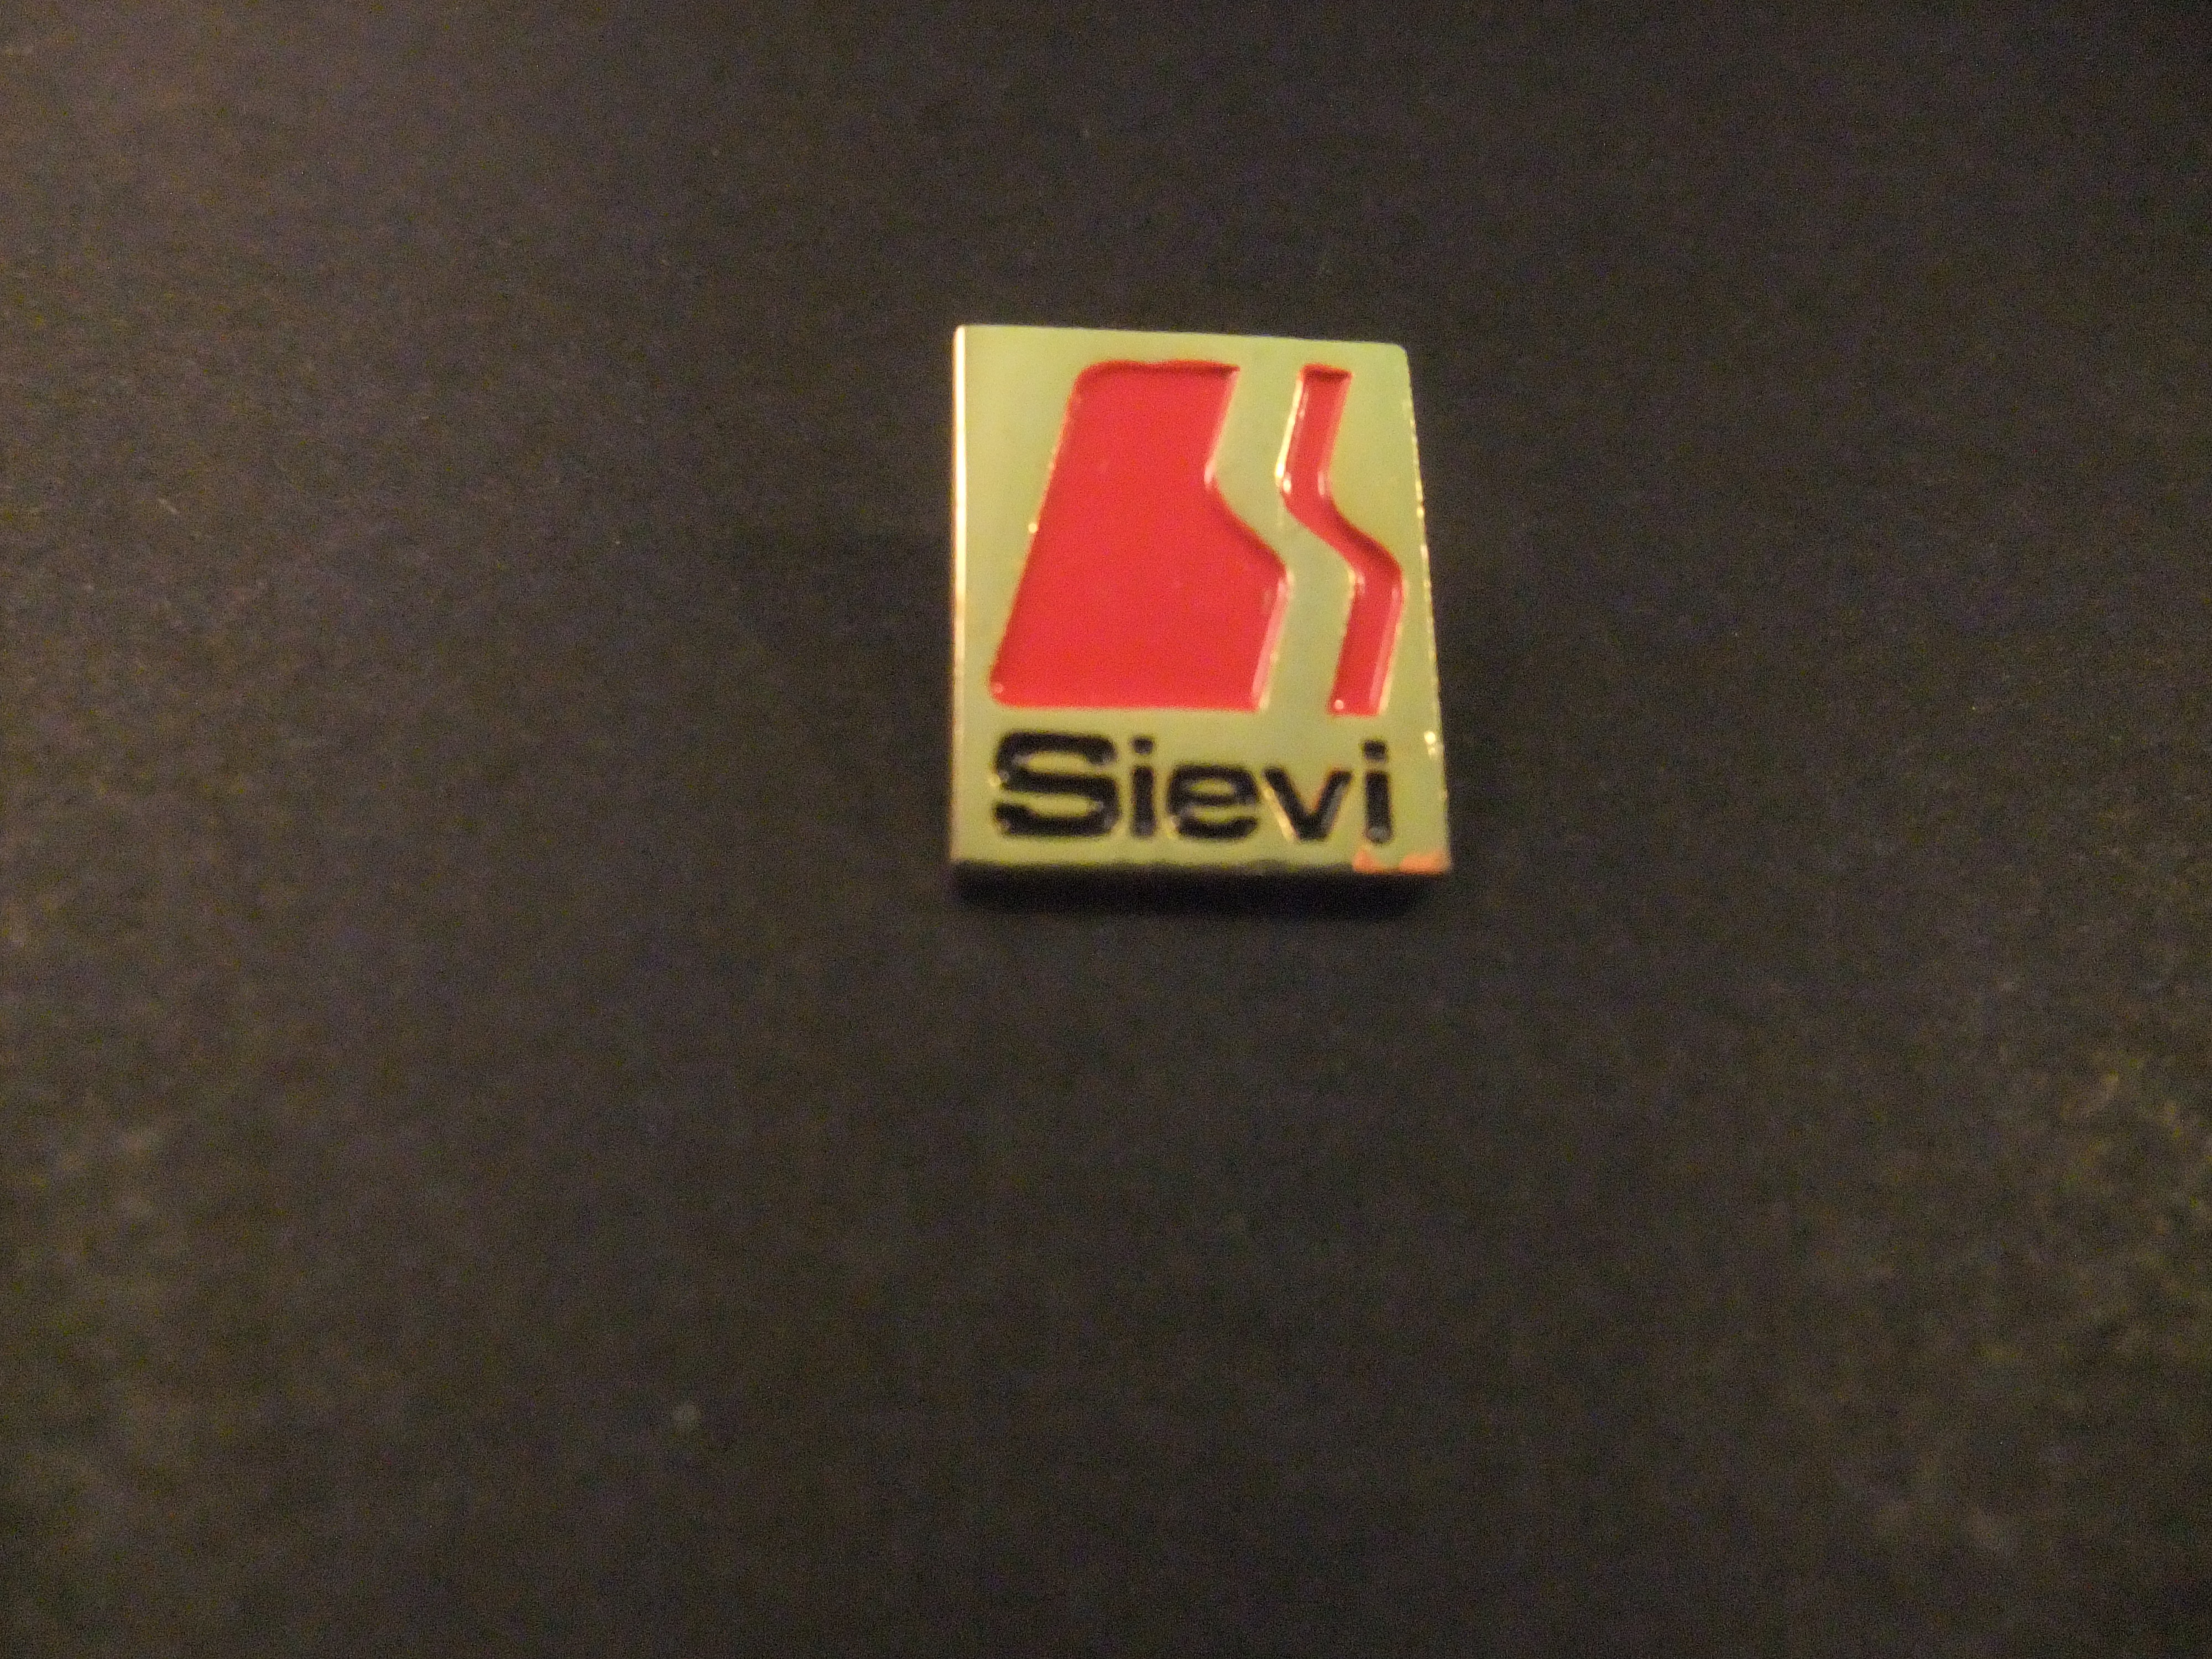 Sievi veiligheids- en werkschoenen, logo